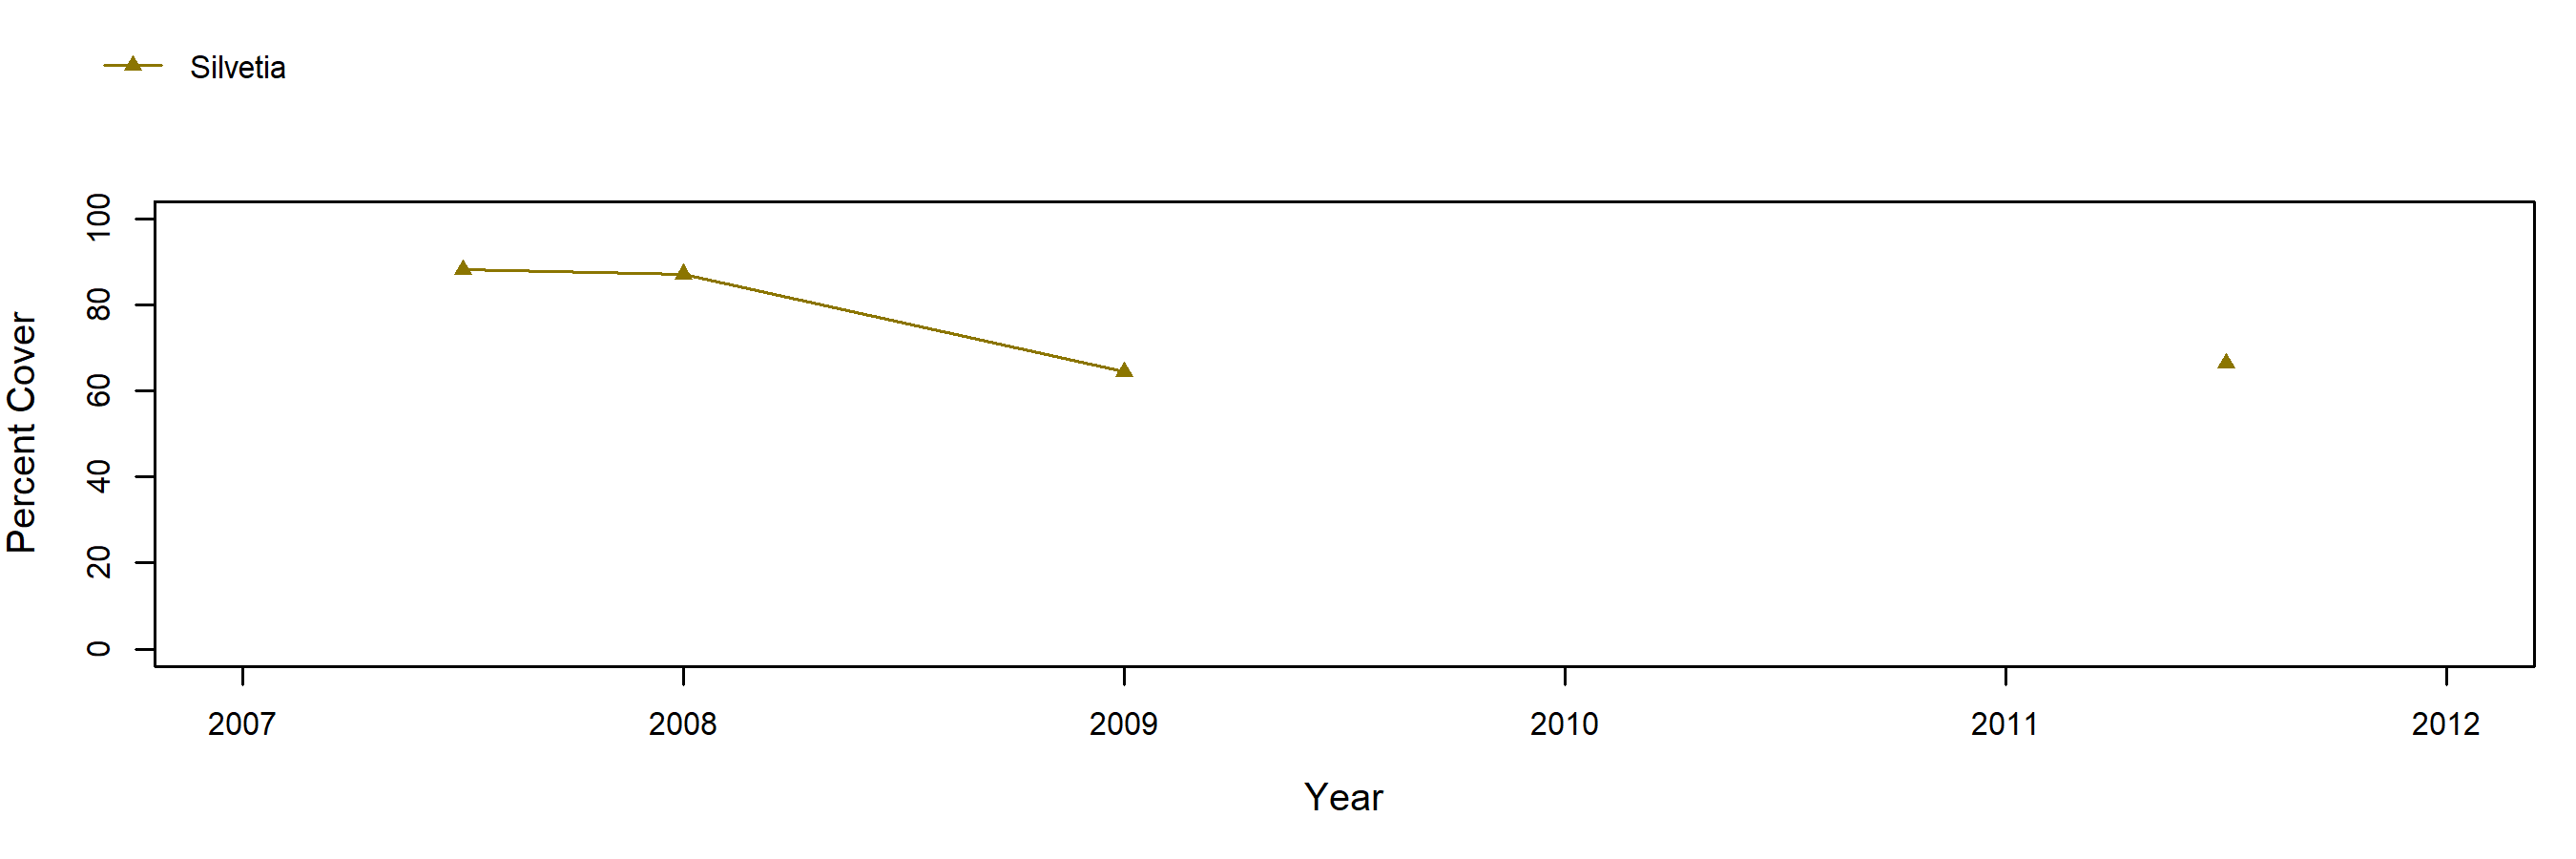 Point Piños Silvetia trend plot